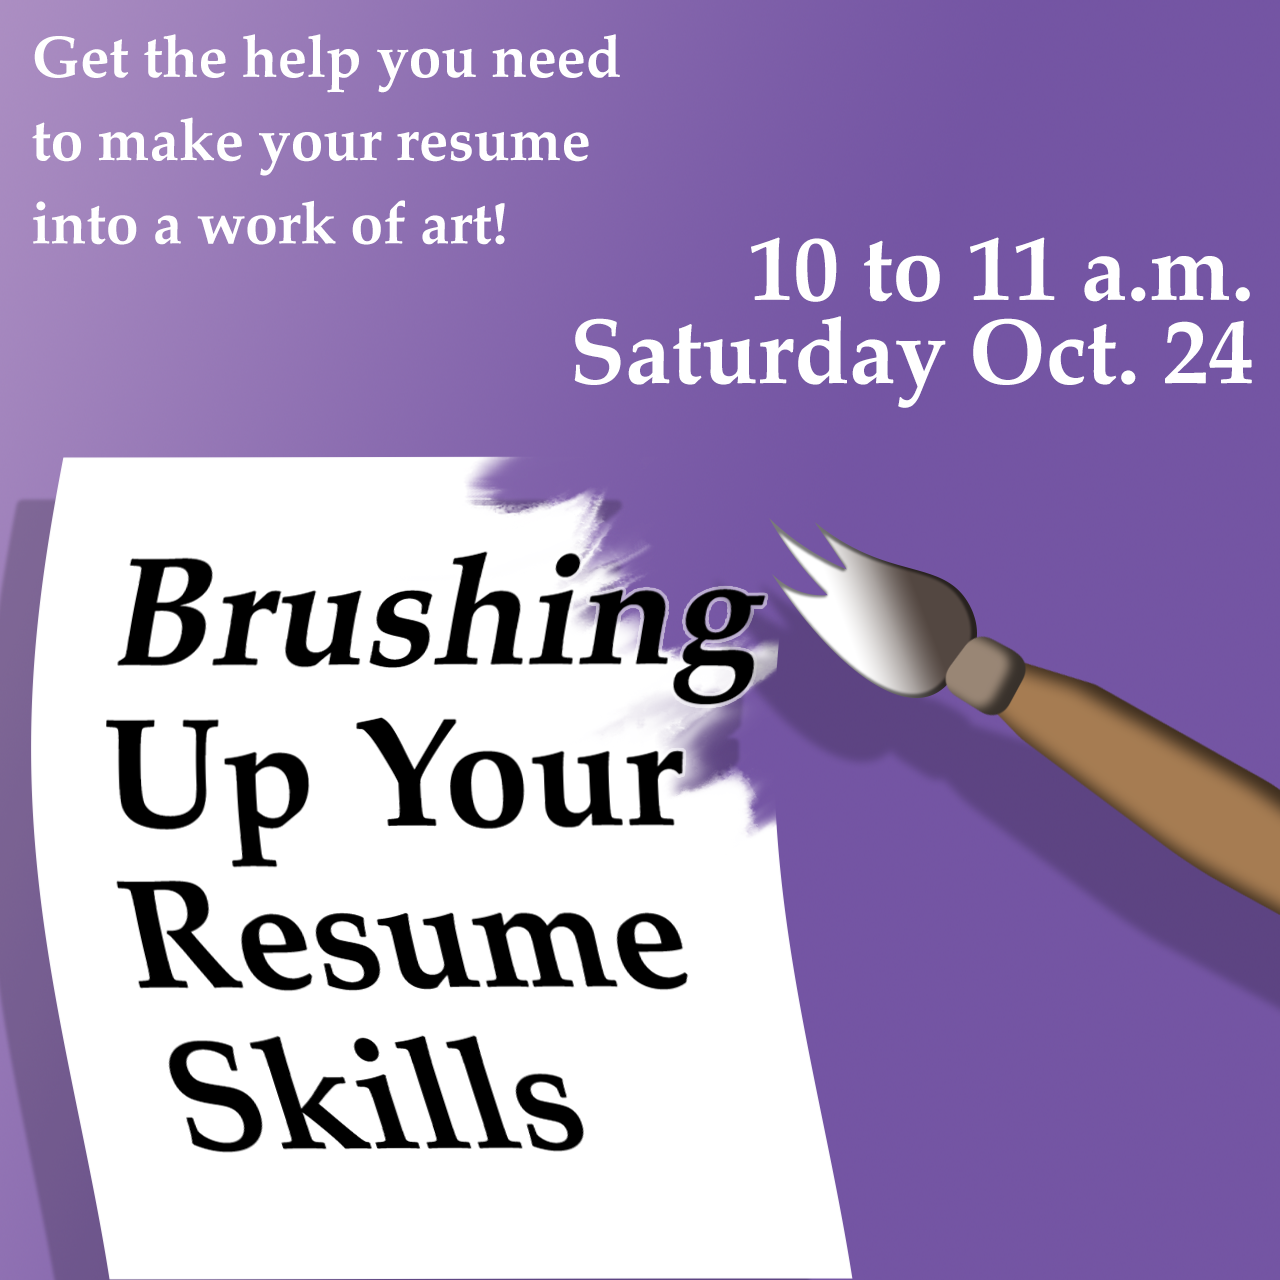 Brushing Up Your Resume Skills